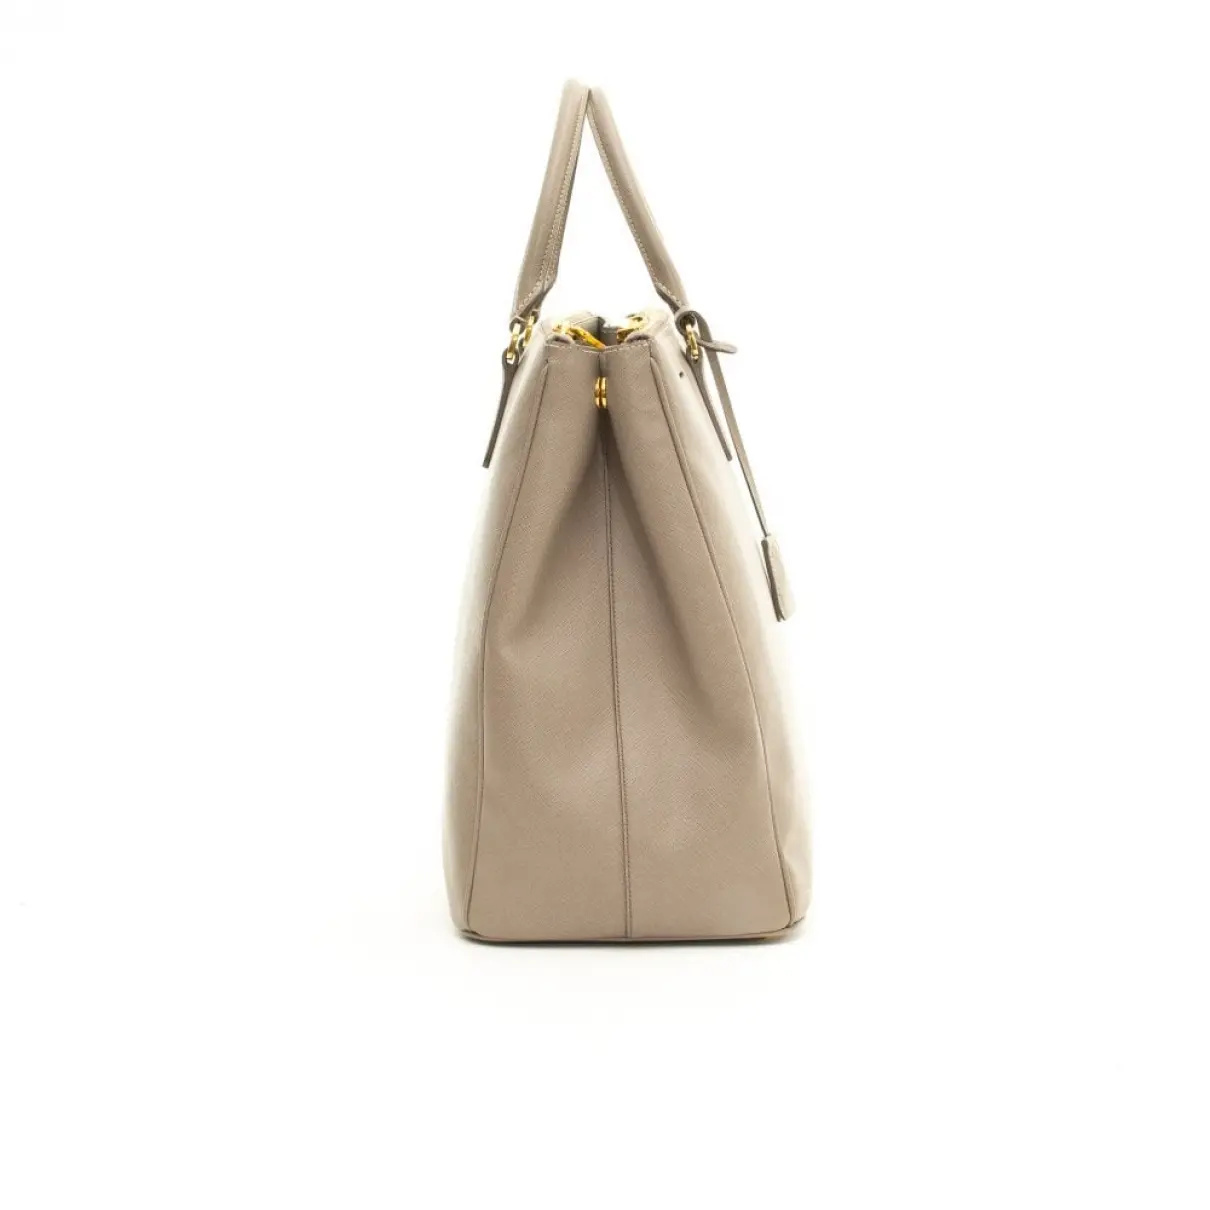 Prada Saffiano leather handbag for sale